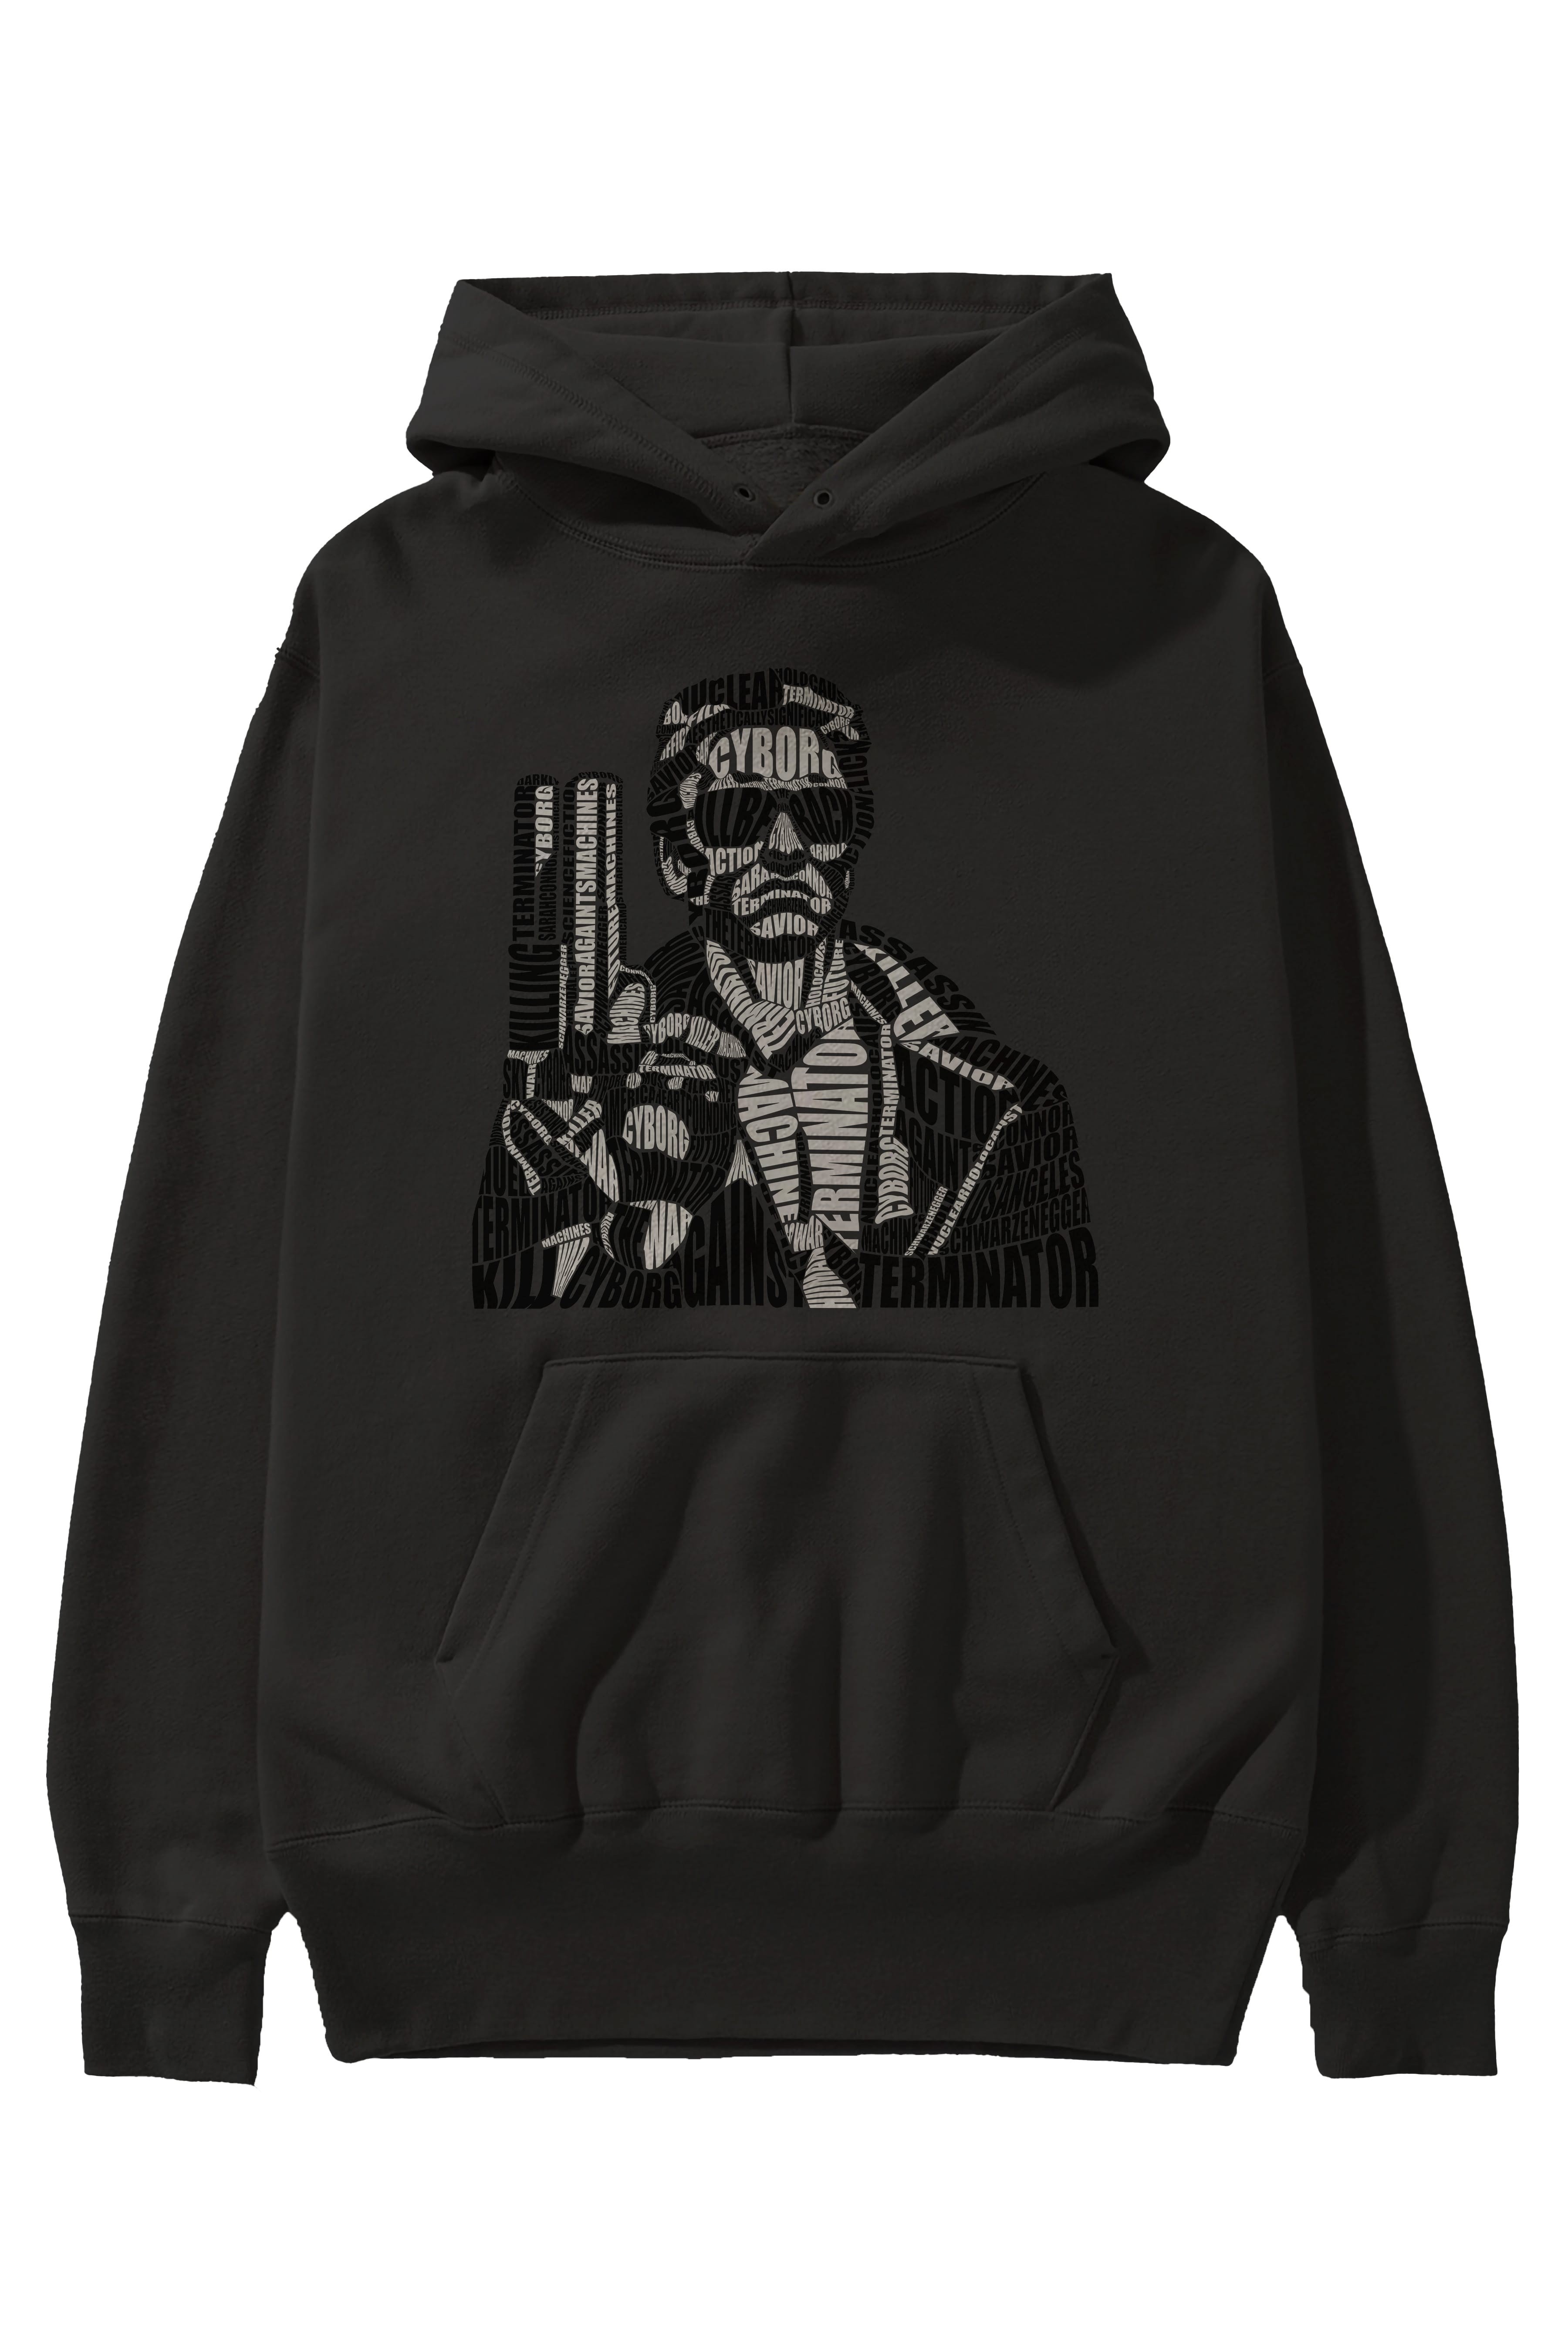 Terminator Calligram Ön Baskılı Hoodie Oversize Kapüşonlu Sweatshirt Erkek Kadın Unisex